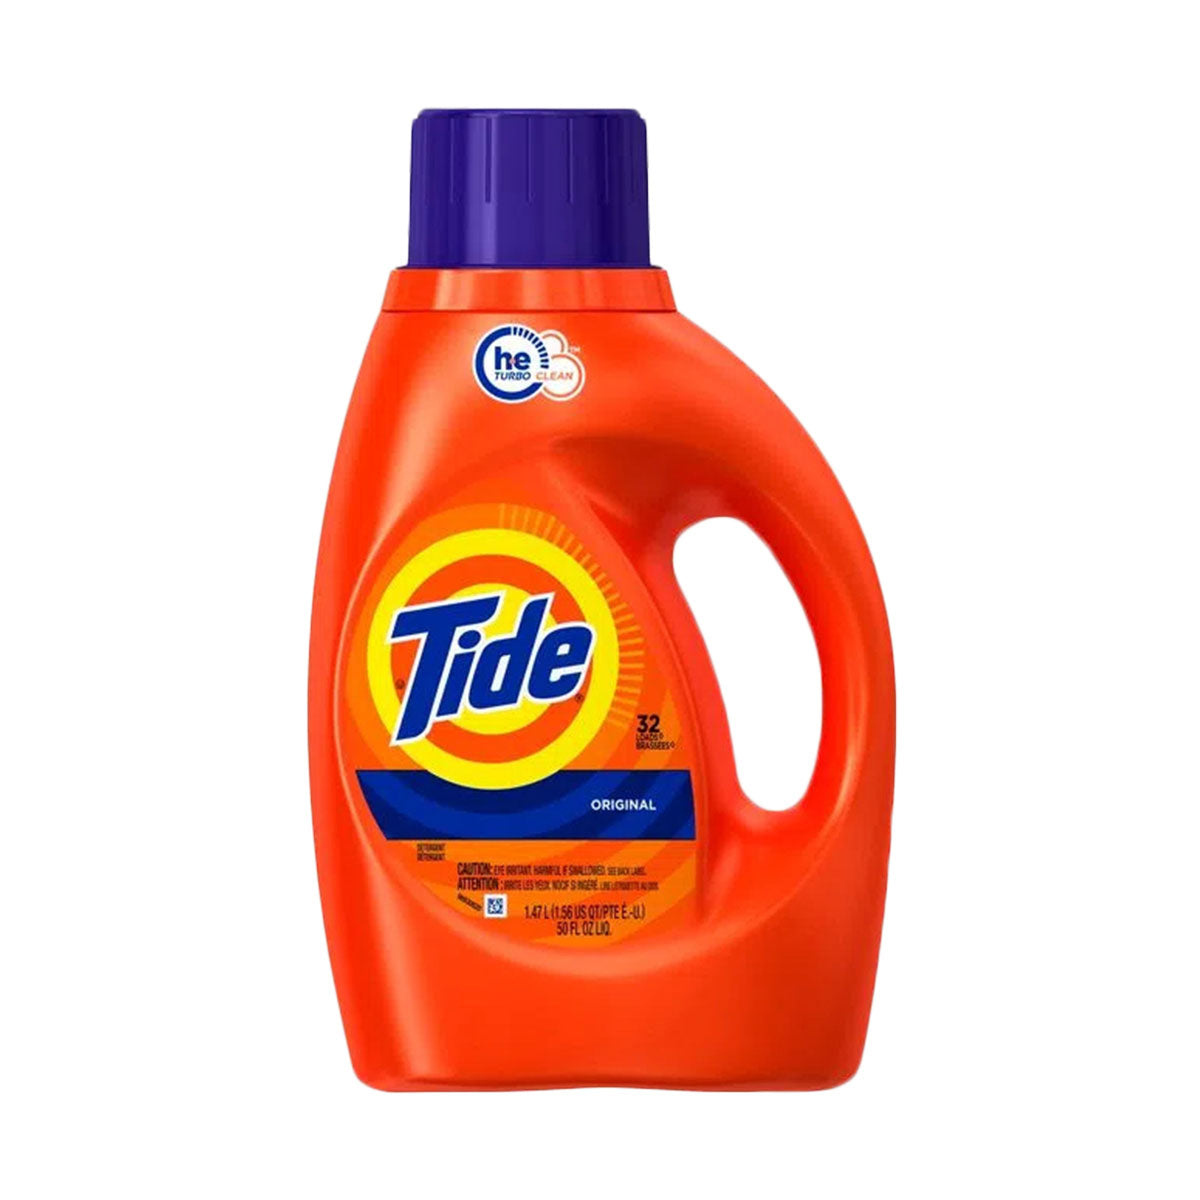 Detergente líquido concentrado para ropa Tide Original 1,36 litros (32 cargas)